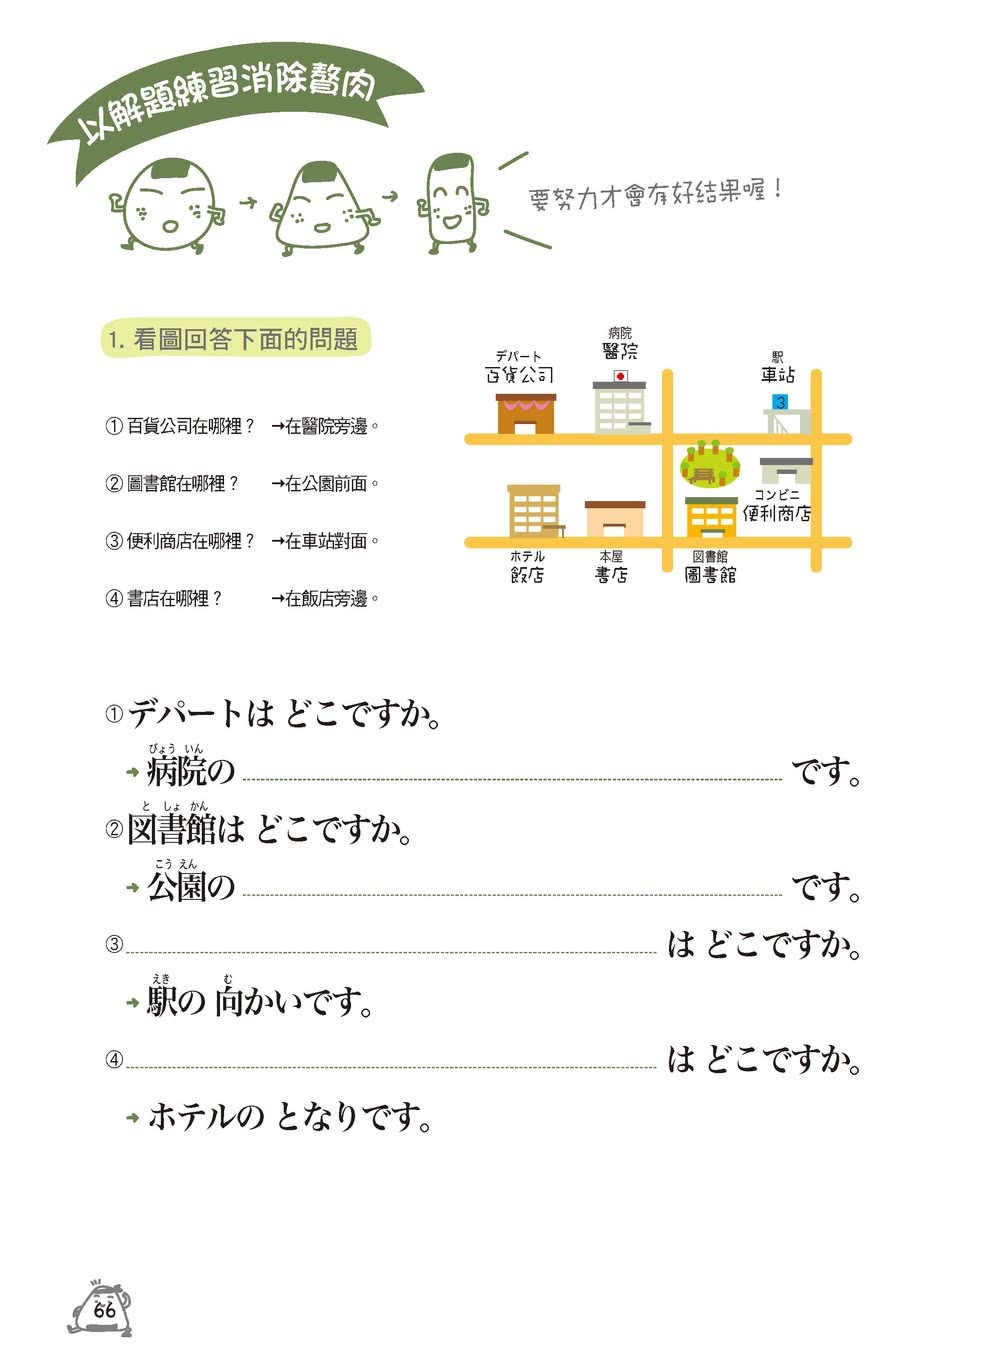 我的第一本日語課本【QR碼行動學習版】：適用完全初學、從零開始的日文學習者 自學、教學都好用！（附隨掃